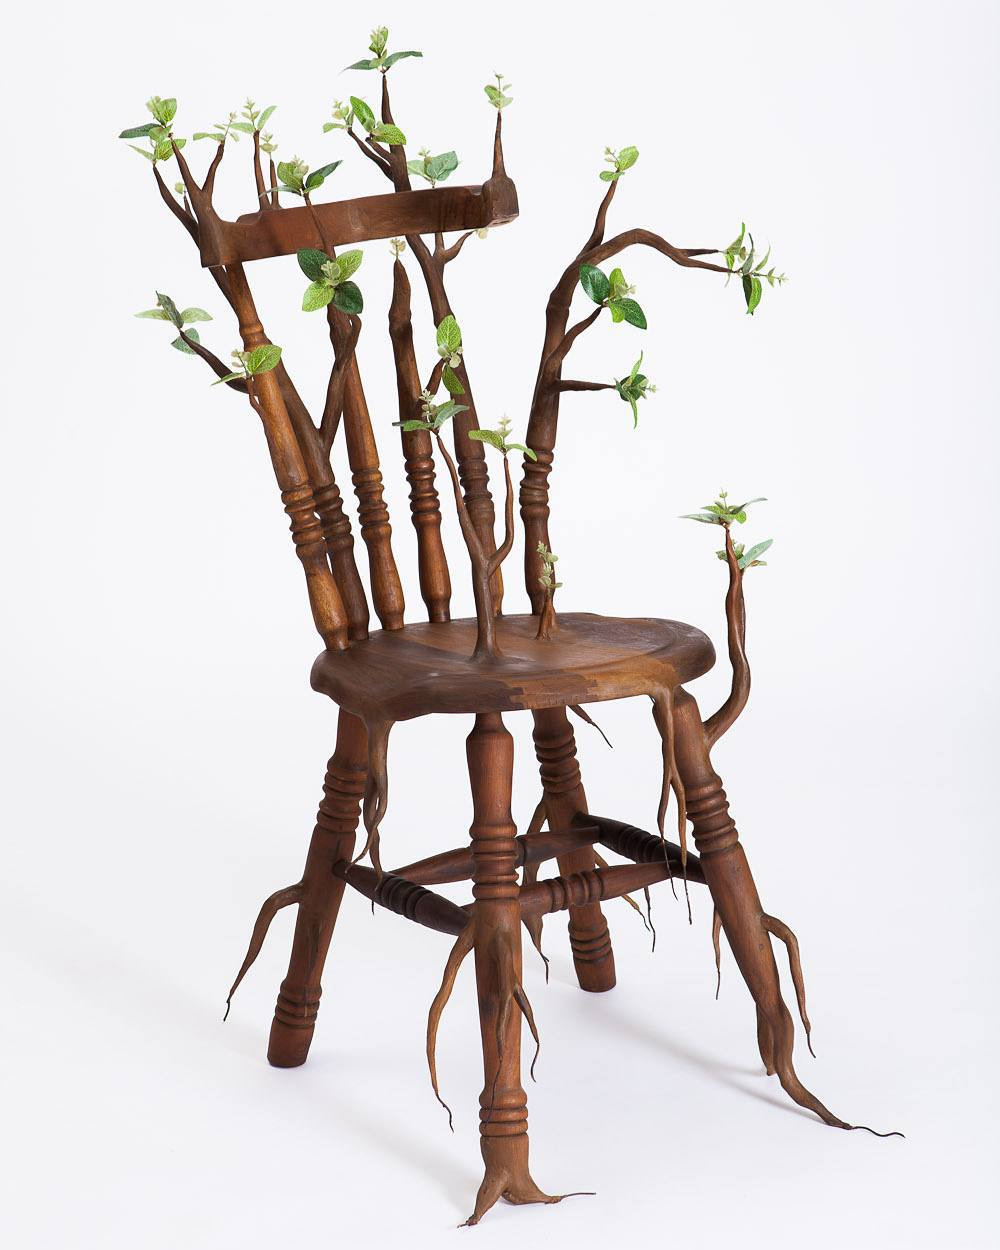 Камиль Качани: скульптурная деревянная мебель и другие арт-объекты из экспериментальной коллекции